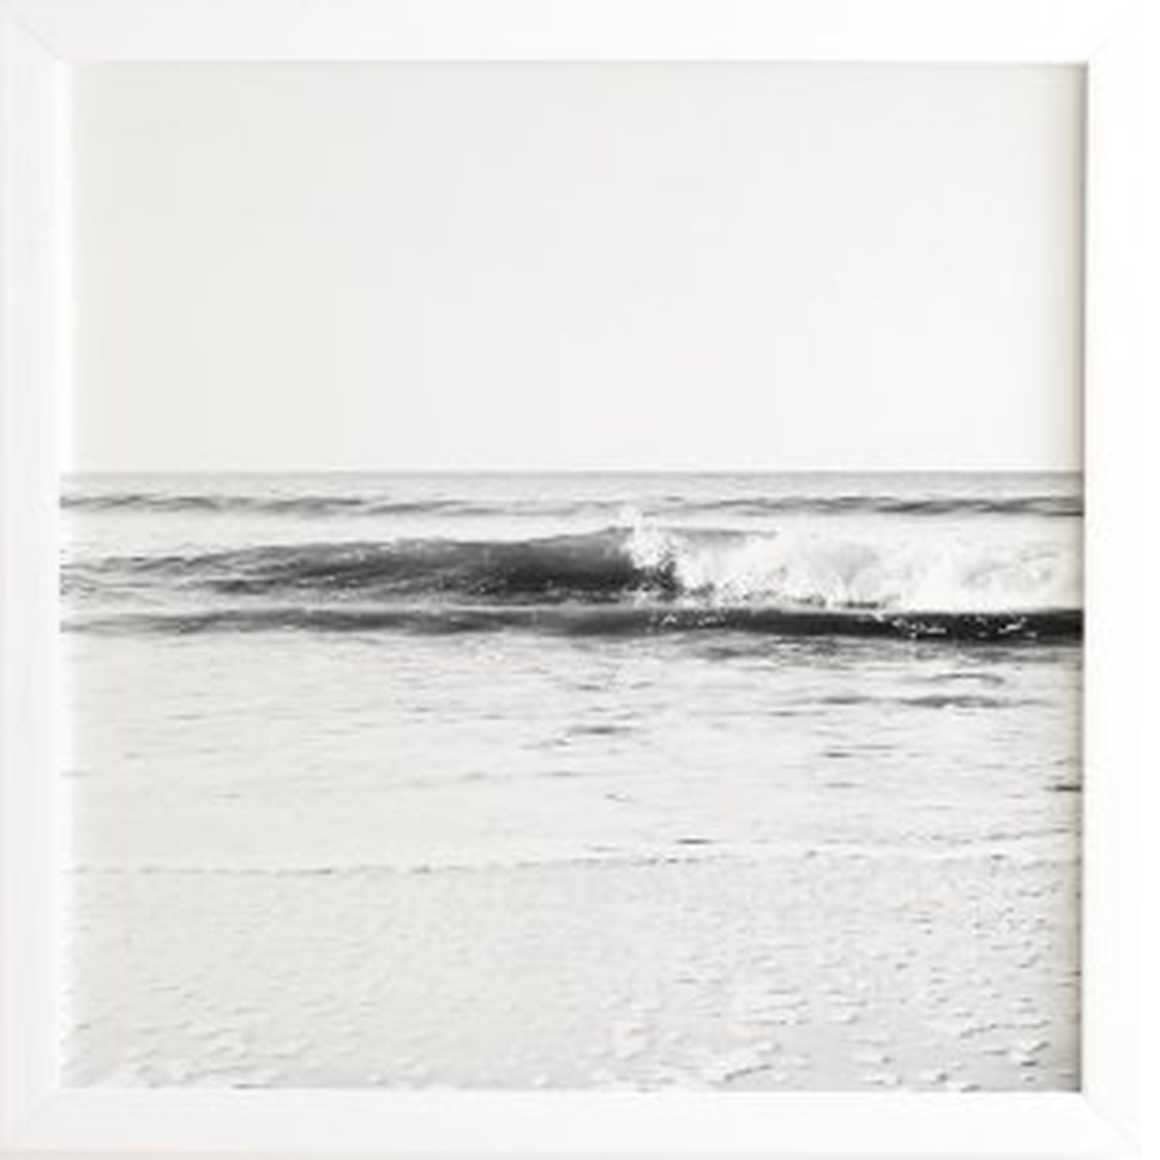 SURF BREAK - White Framed Wall Art - Image 0